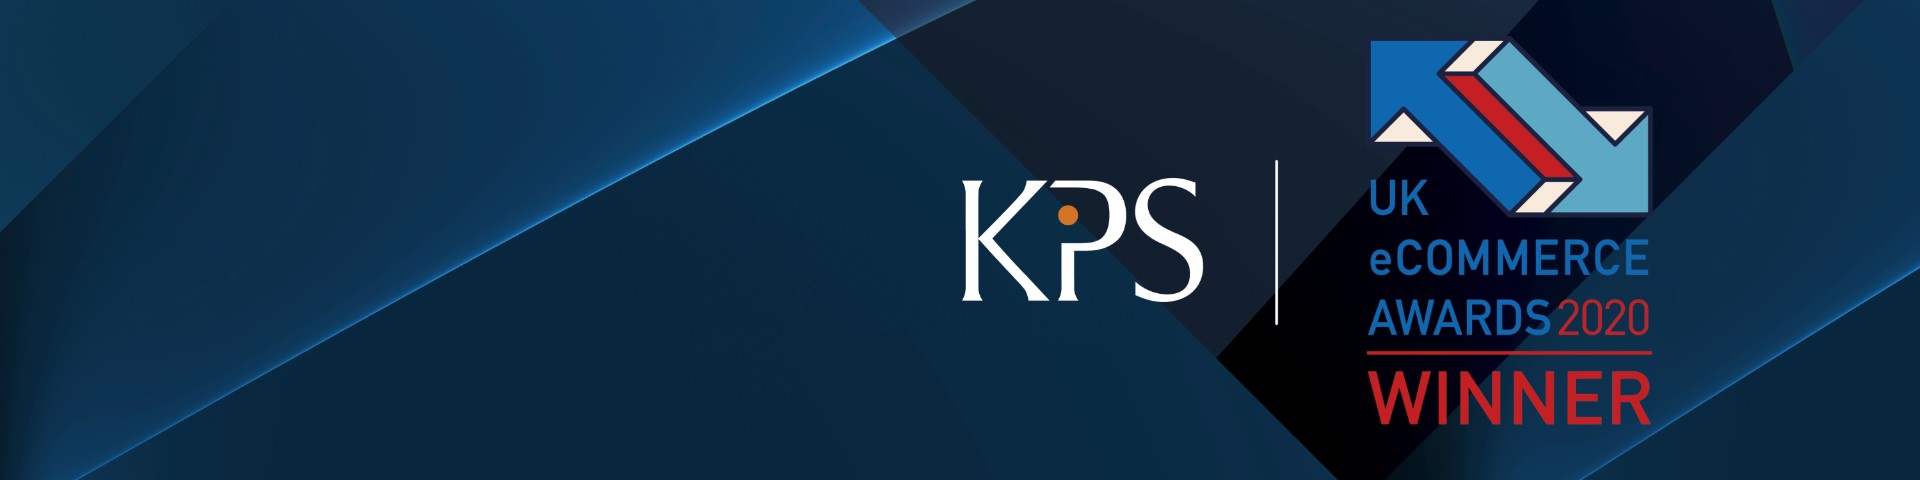 KPS UK eCommerce Awards 2020